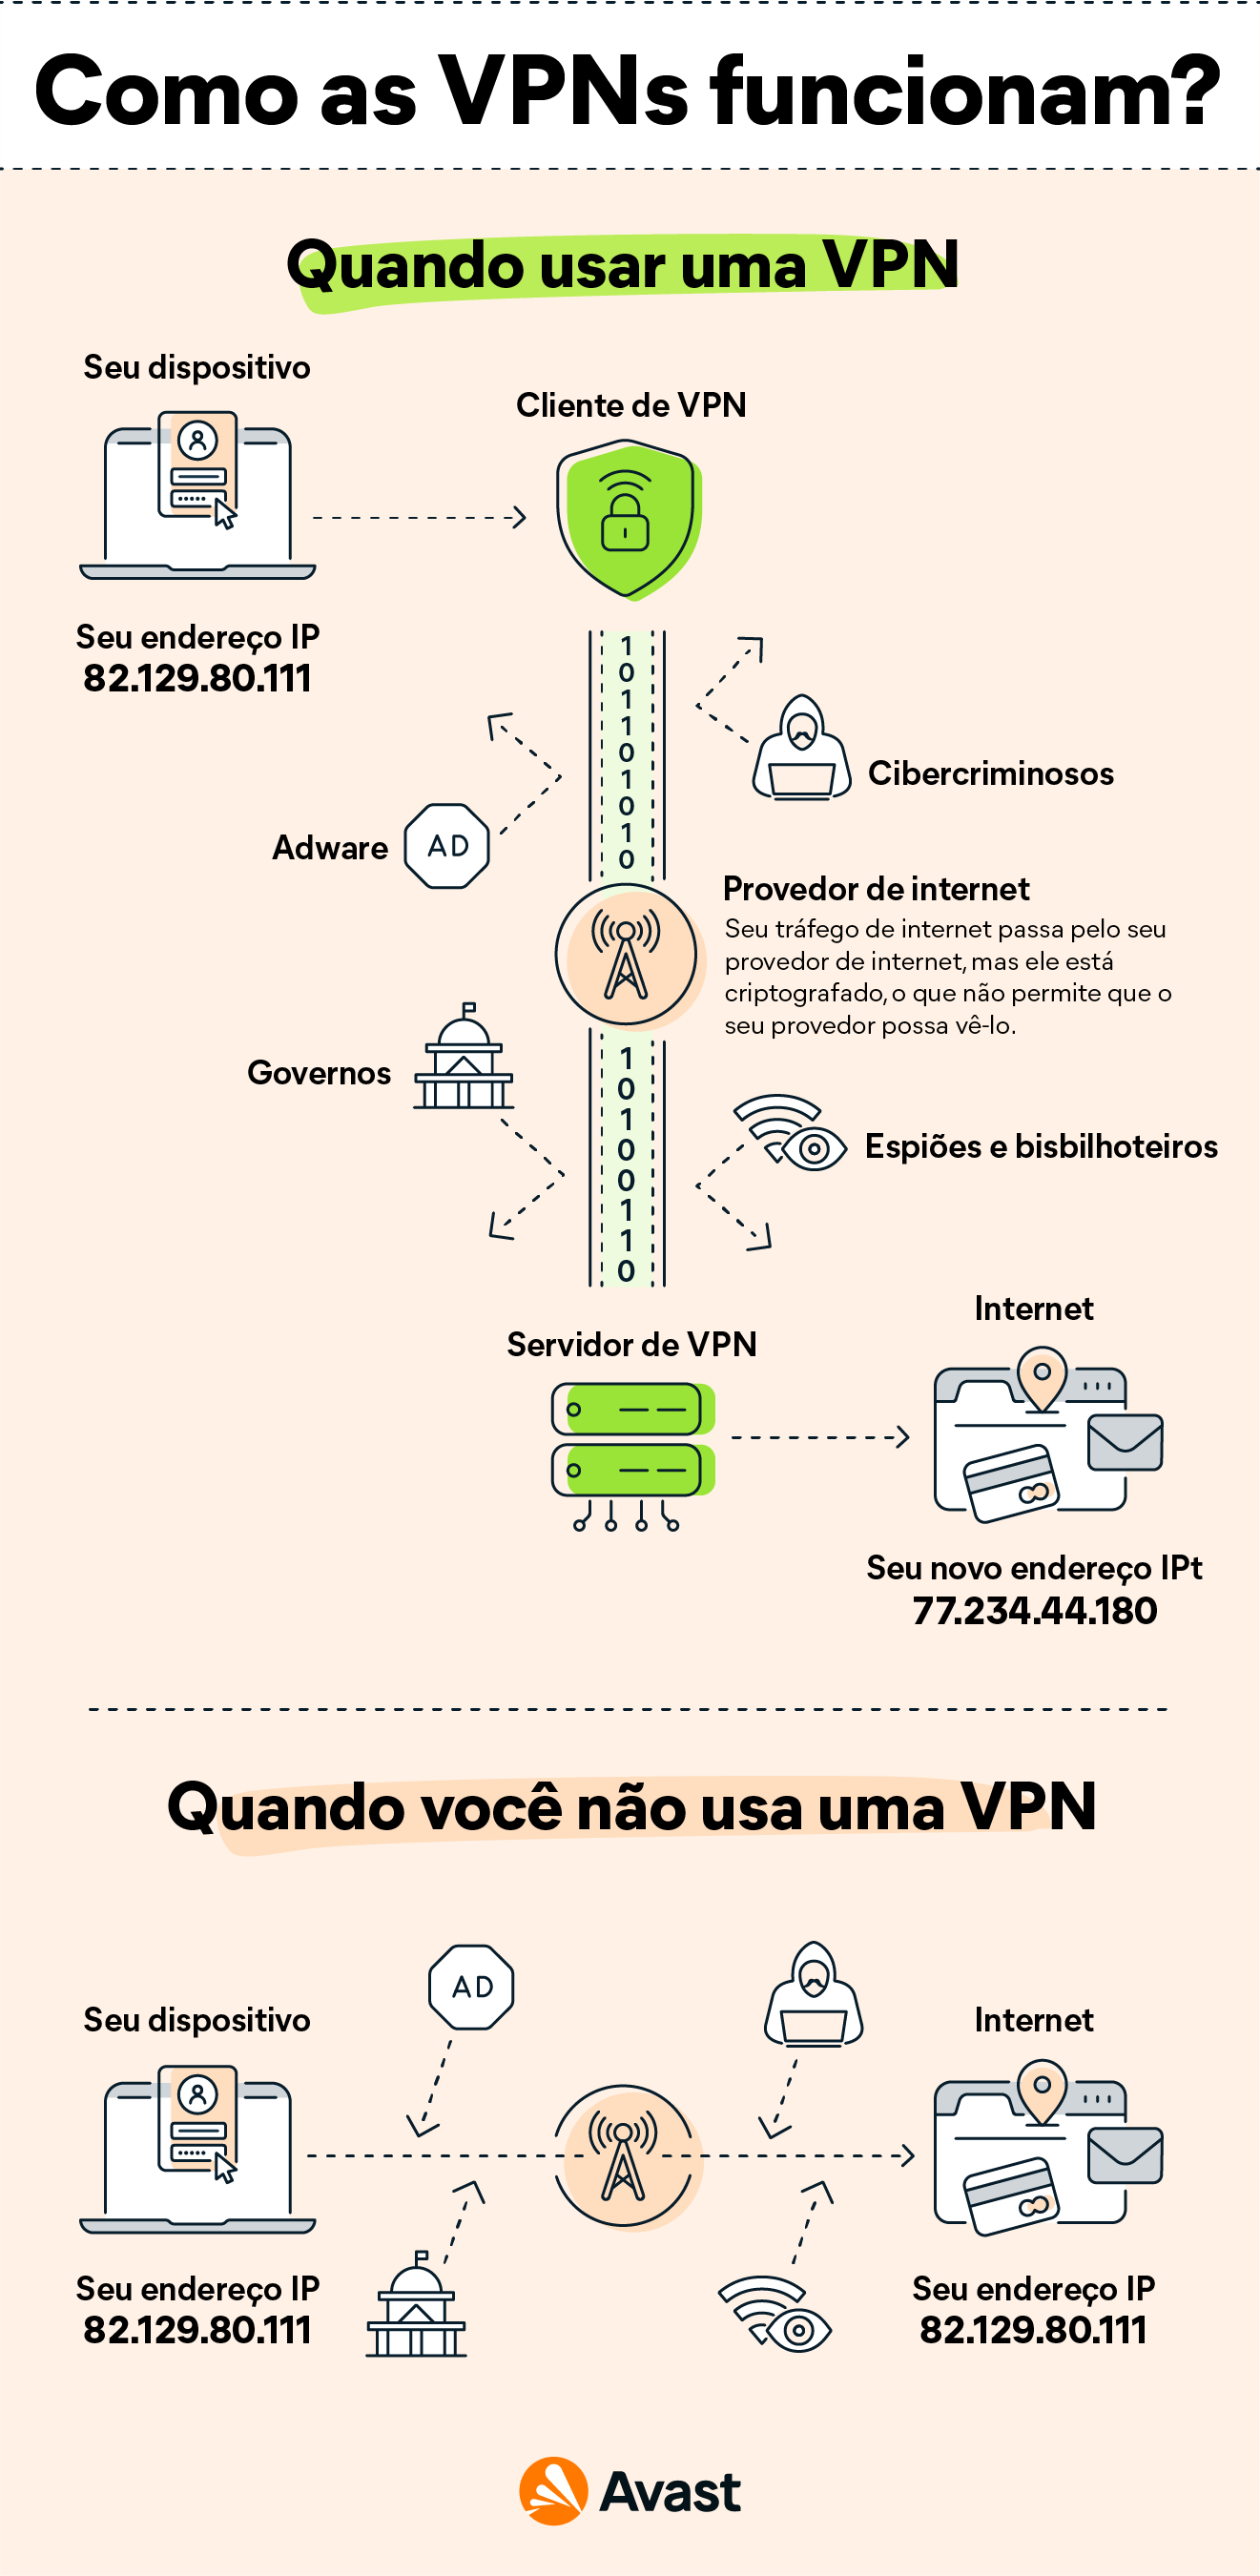 O que é uma VPN? Como ela funciona?